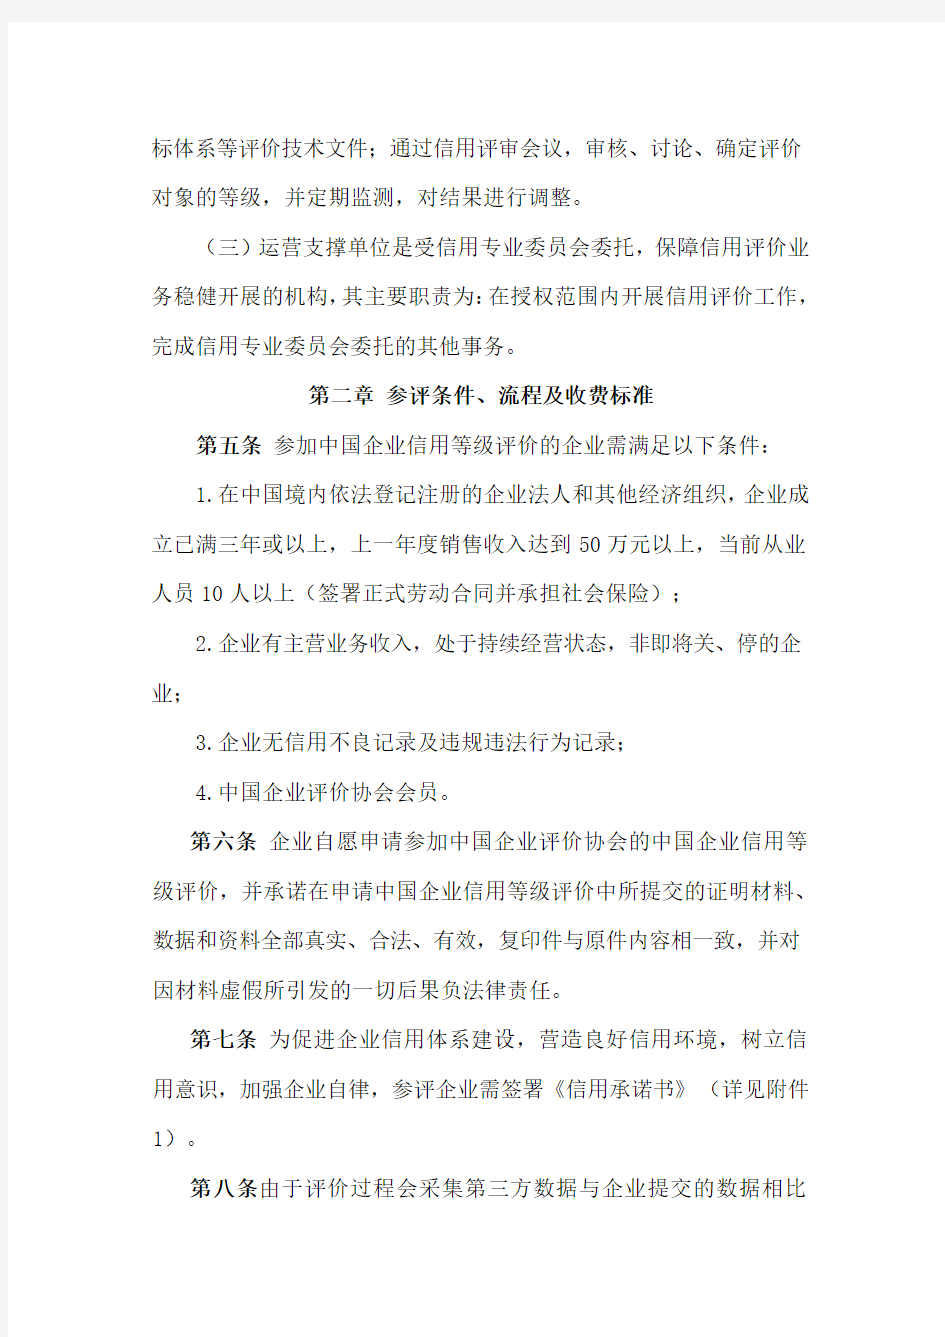 1中国企业评价协会中国企业信用等级评价管理办法